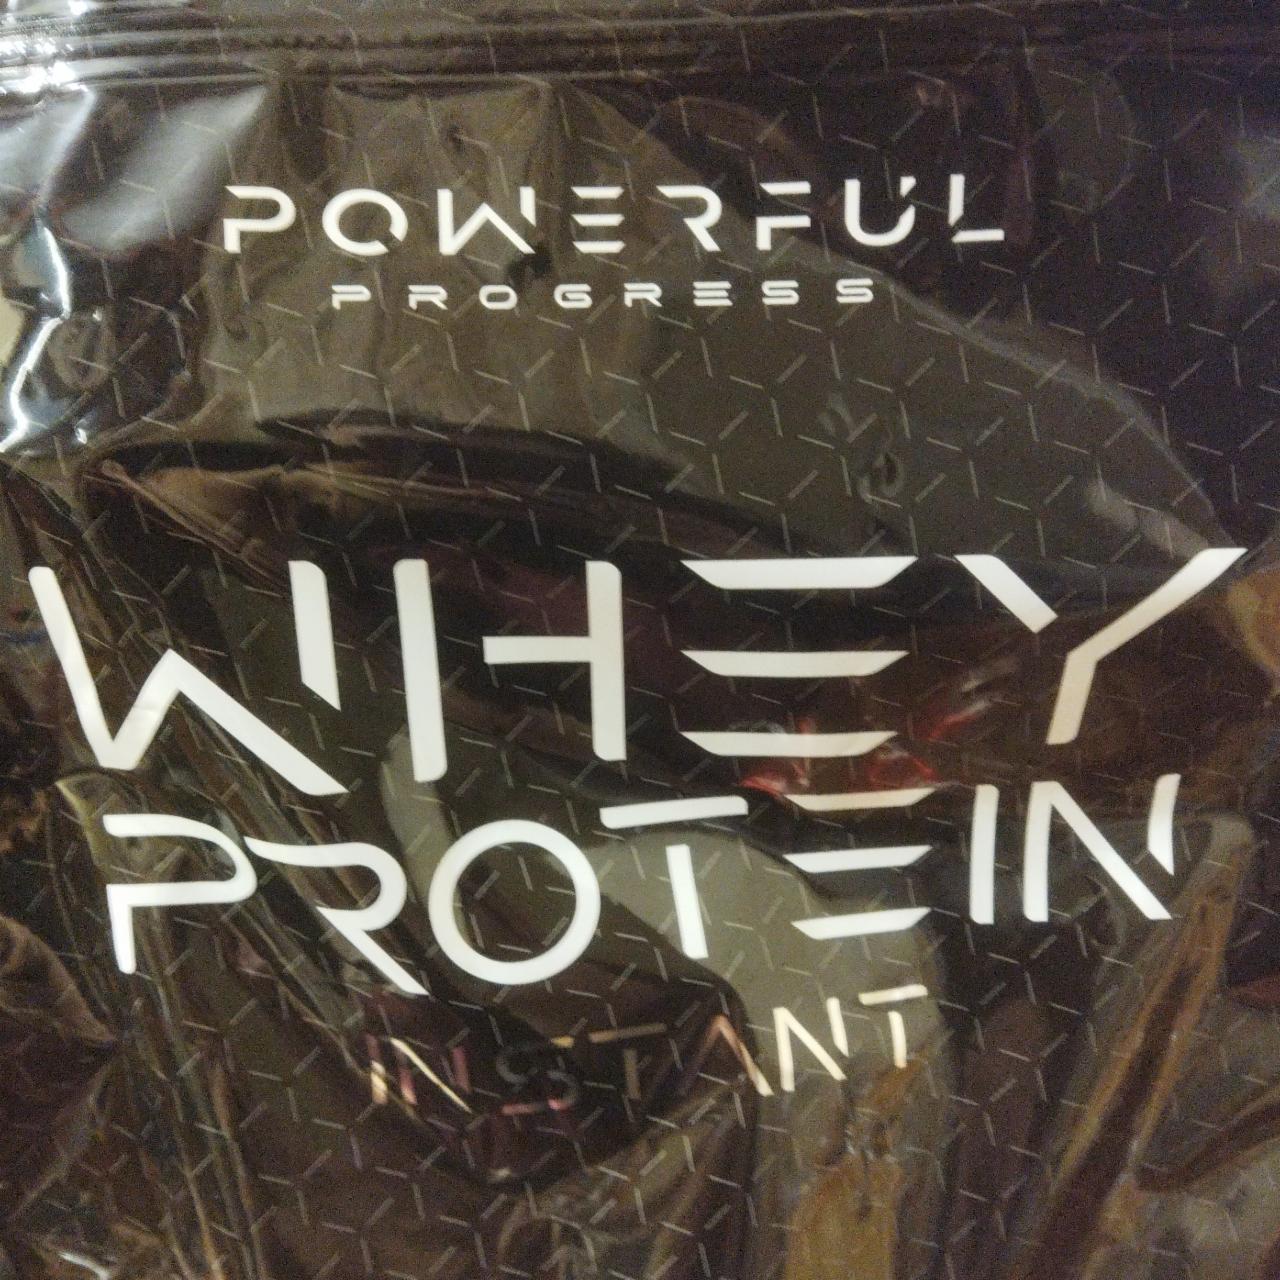 Фото - Протеїн Whey Protein Instant сироватковий шоколадний Powerful Progress